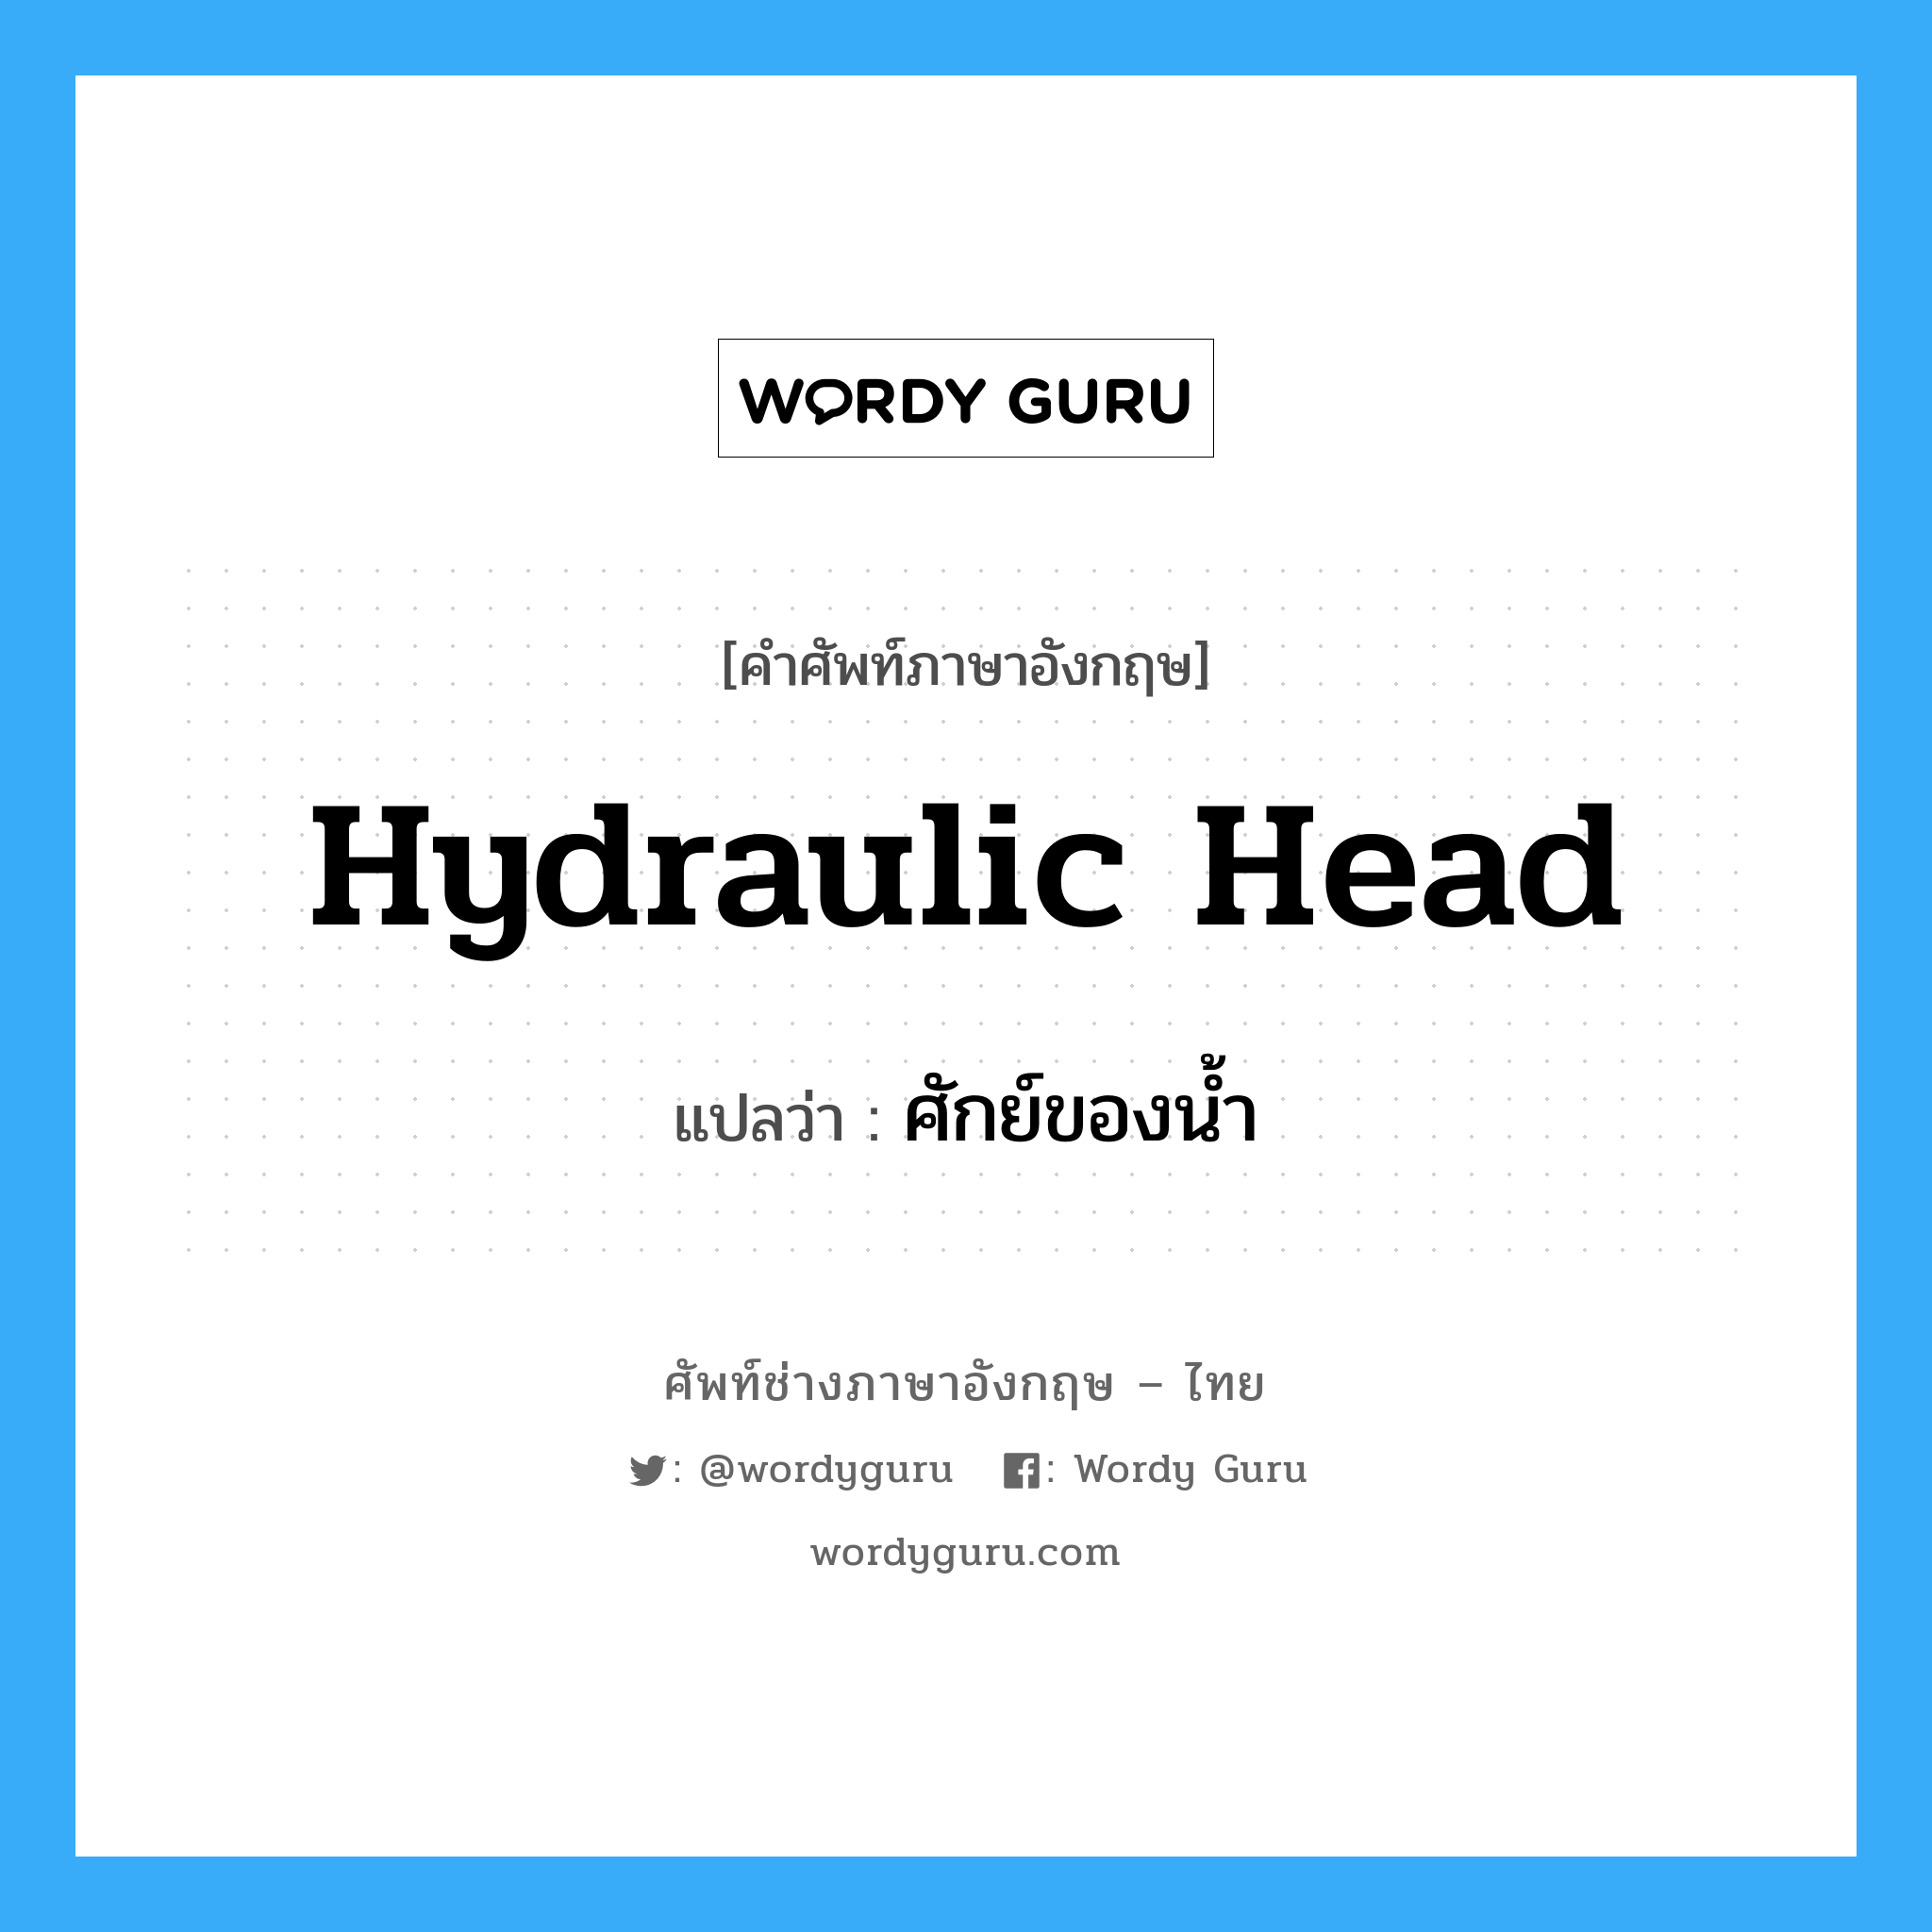 hydraulic head แปลว่า?, คำศัพท์ช่างภาษาอังกฤษ - ไทย hydraulic head คำศัพท์ภาษาอังกฤษ hydraulic head แปลว่า ศักย์ของน้ำ